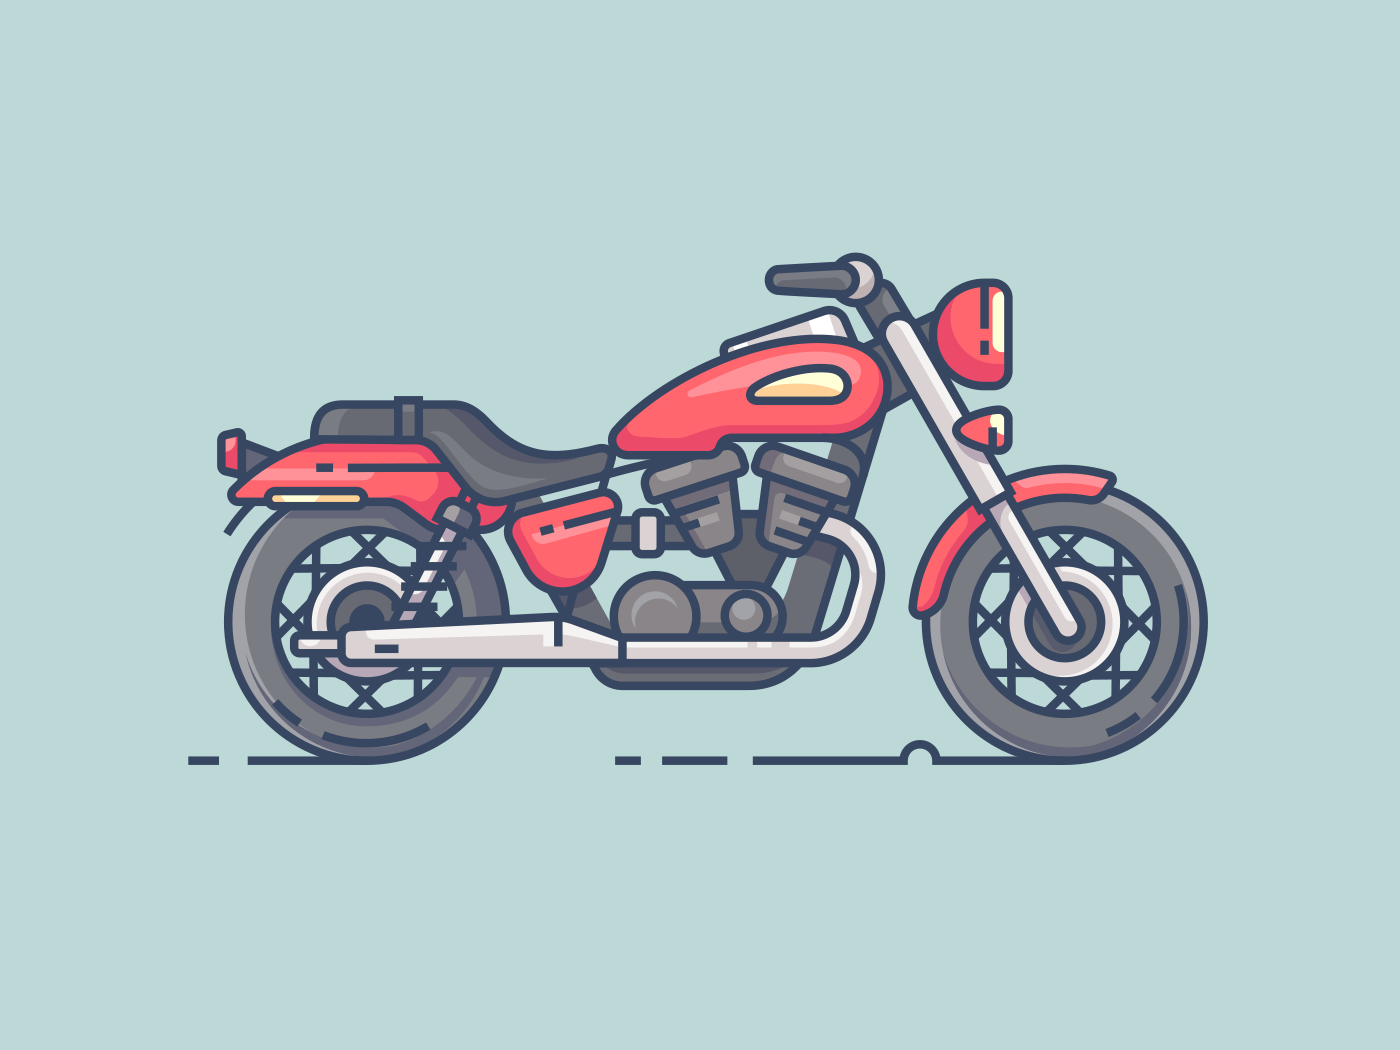 Cool biker motorcycle